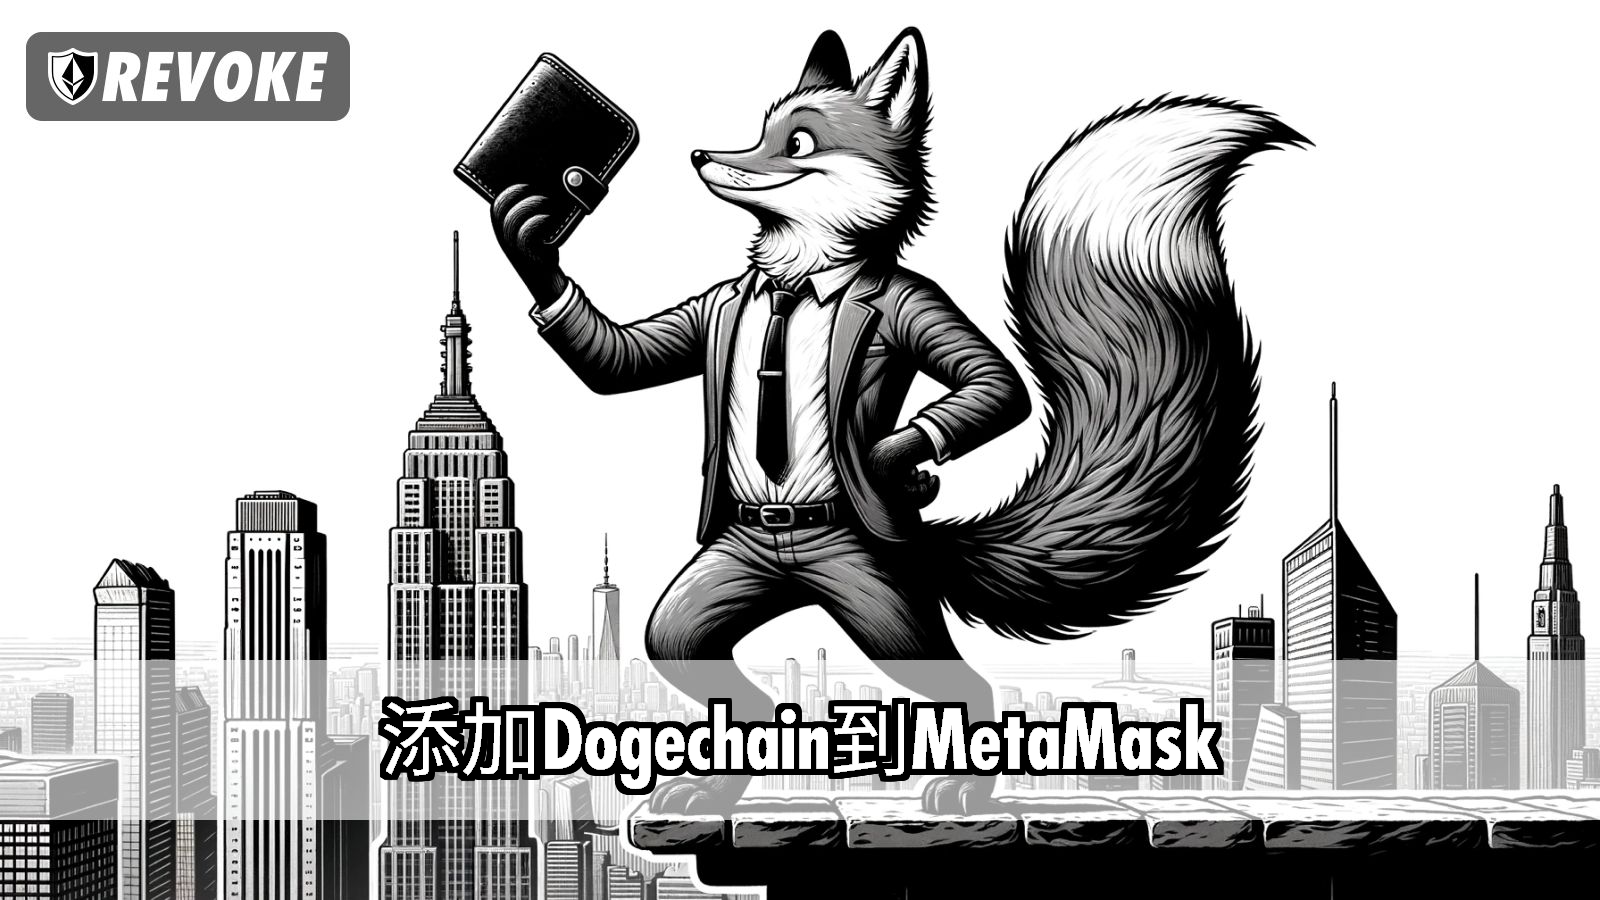 添加Dogechain到MetaMask